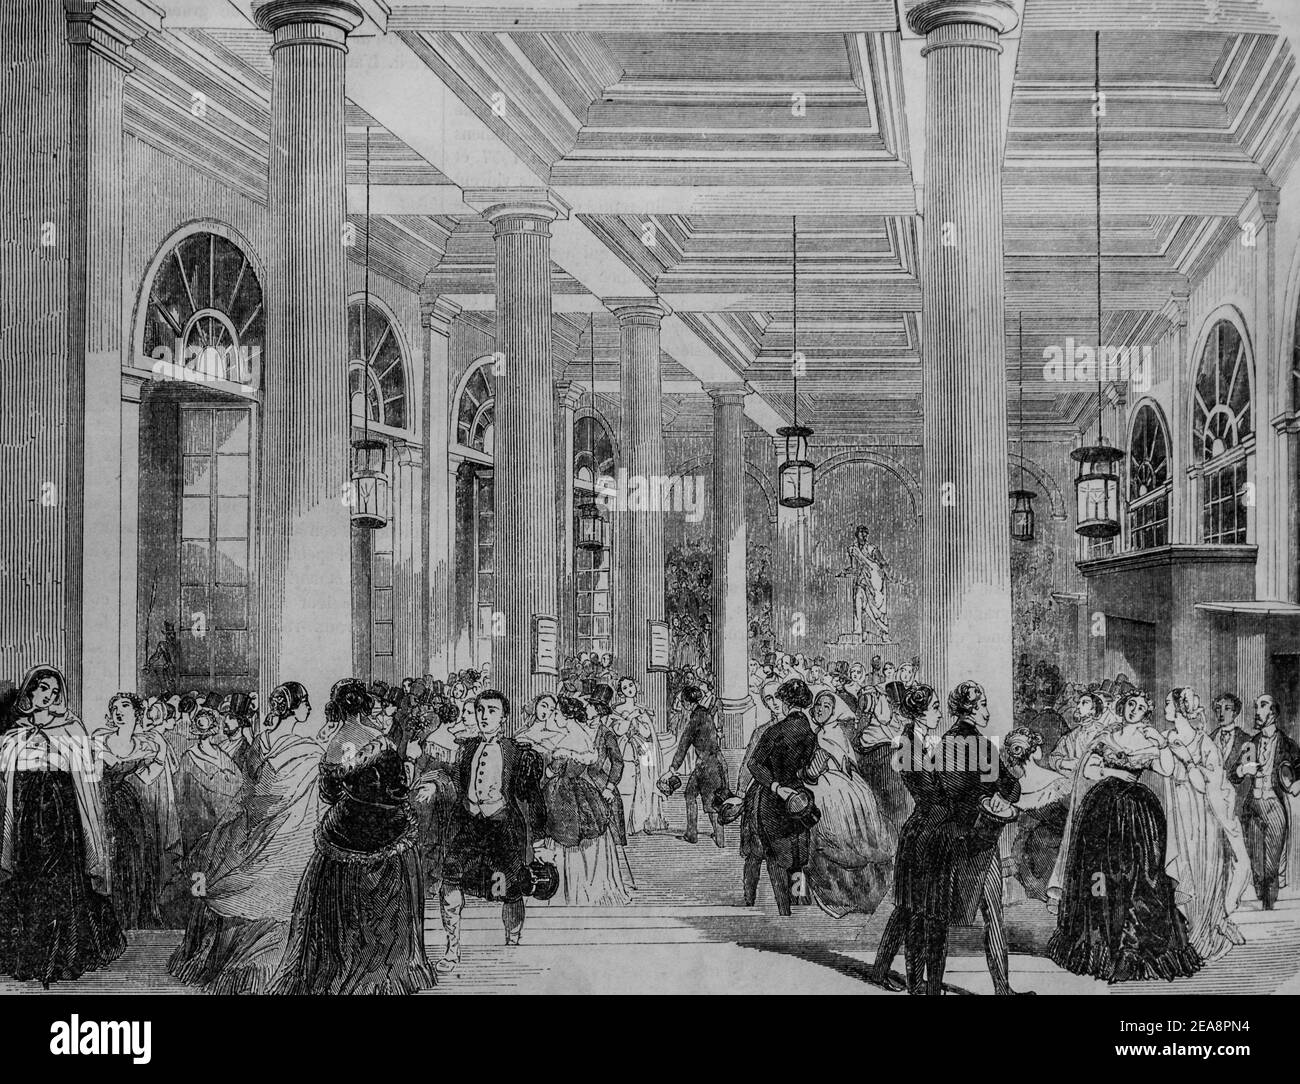 théâtre terrestre, tableau de paris par edmond texier, éditeur paulin et le chevalier 1852 Banque D'Images